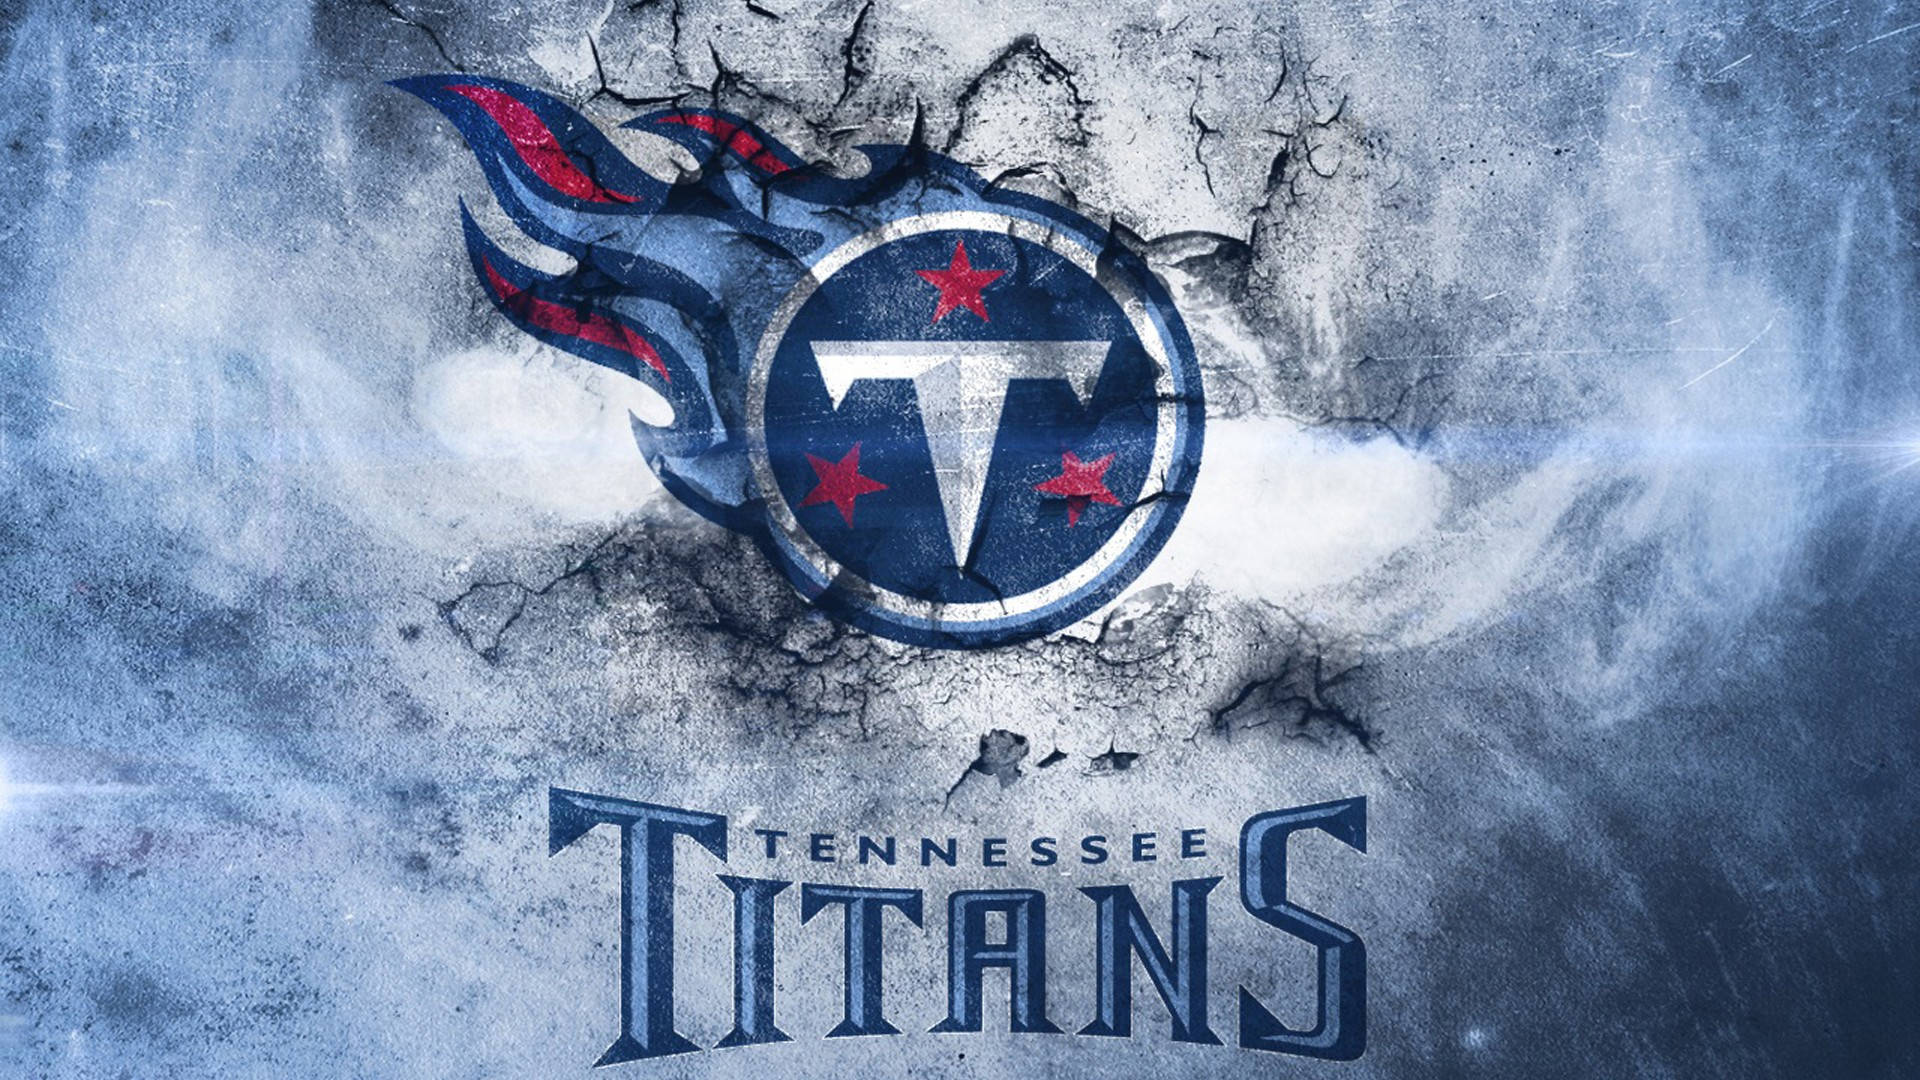 Titans Pictures Wallpaper